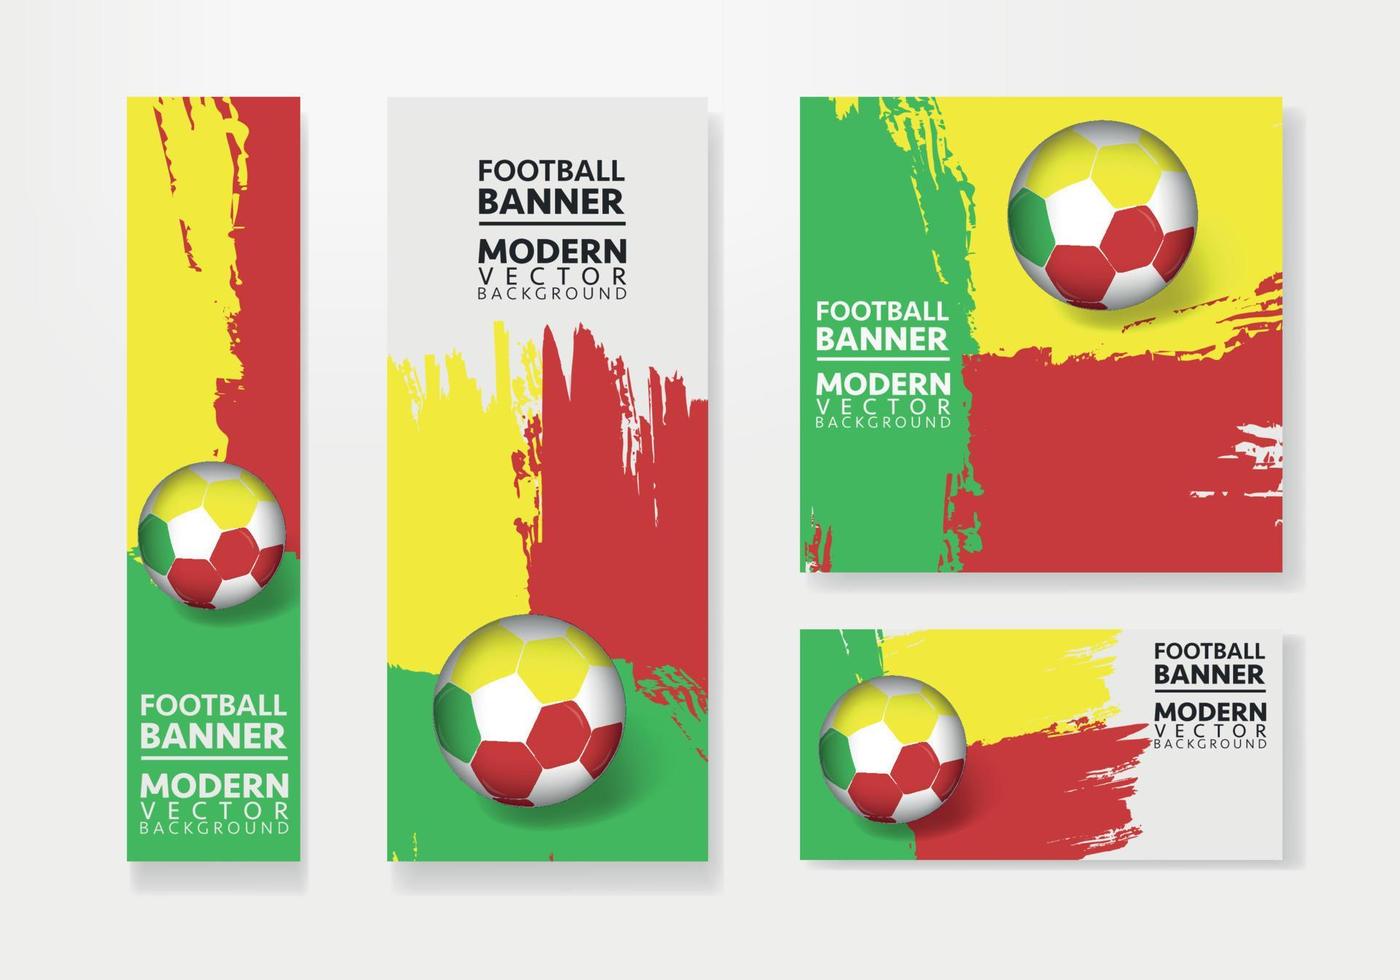 equipo de fútbol de benin con diseño de vector de fondo de bandera. concepto de campeonato de fútbol con plantilla de ilustración de pelota de fútbol. diseño de pancartas de fútbol.